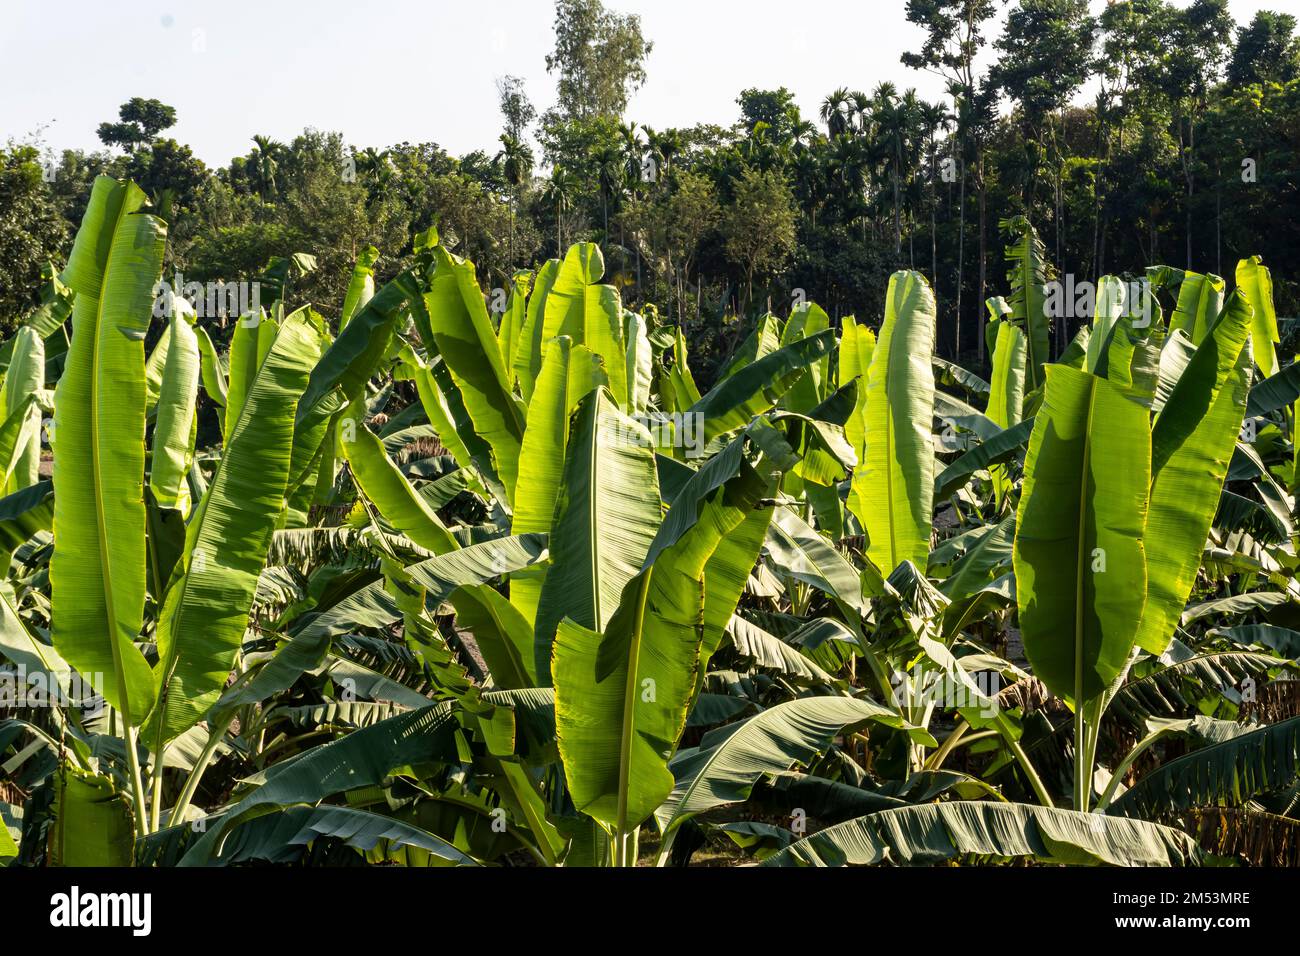 Green bananas garden in Bangladesh. Stock Photo